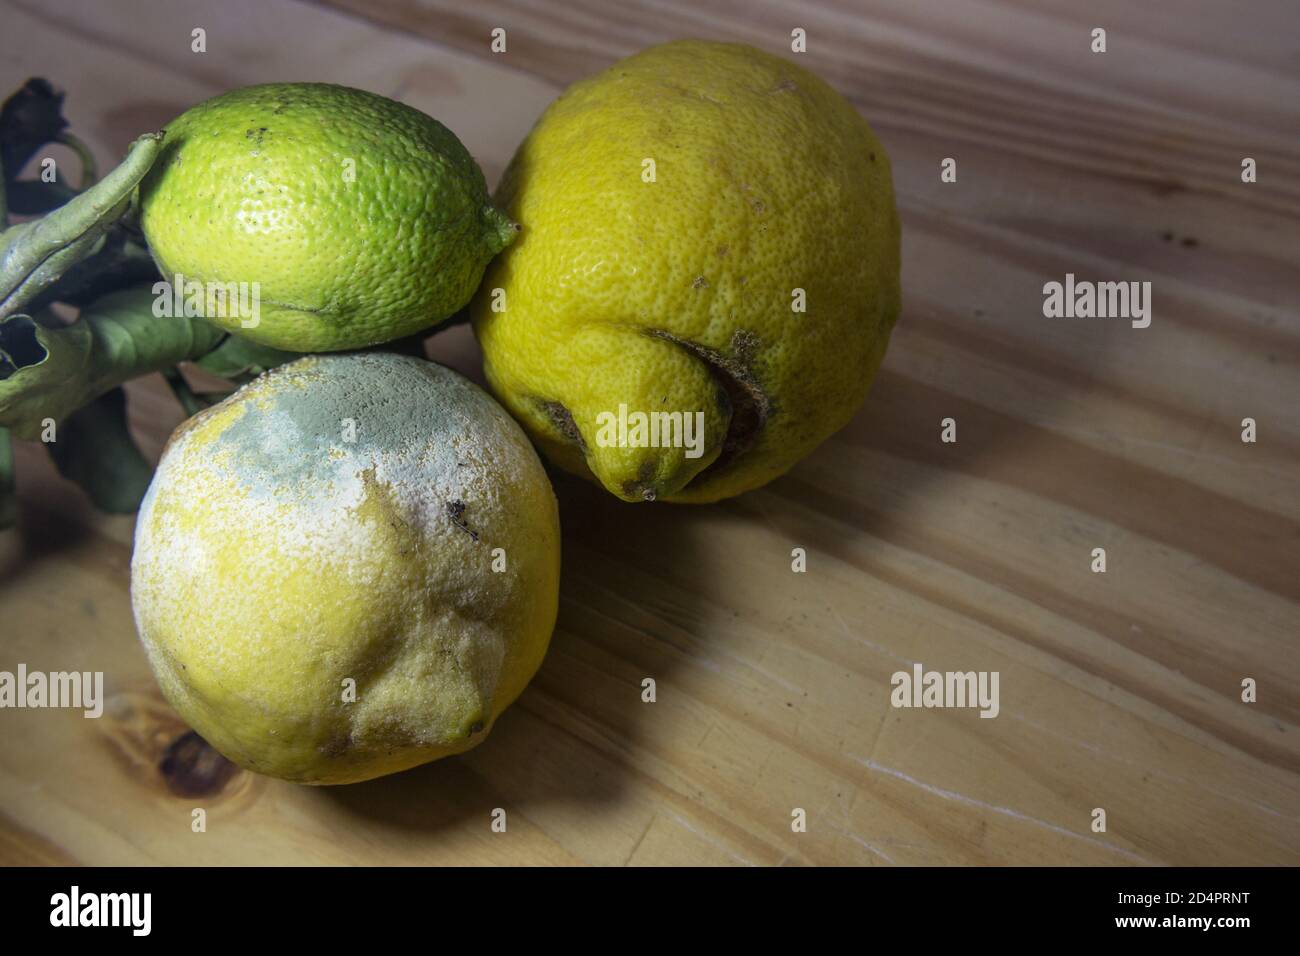 Groupe de trois citrons, dont l'un est recouvert de moisissure Banque D'Images